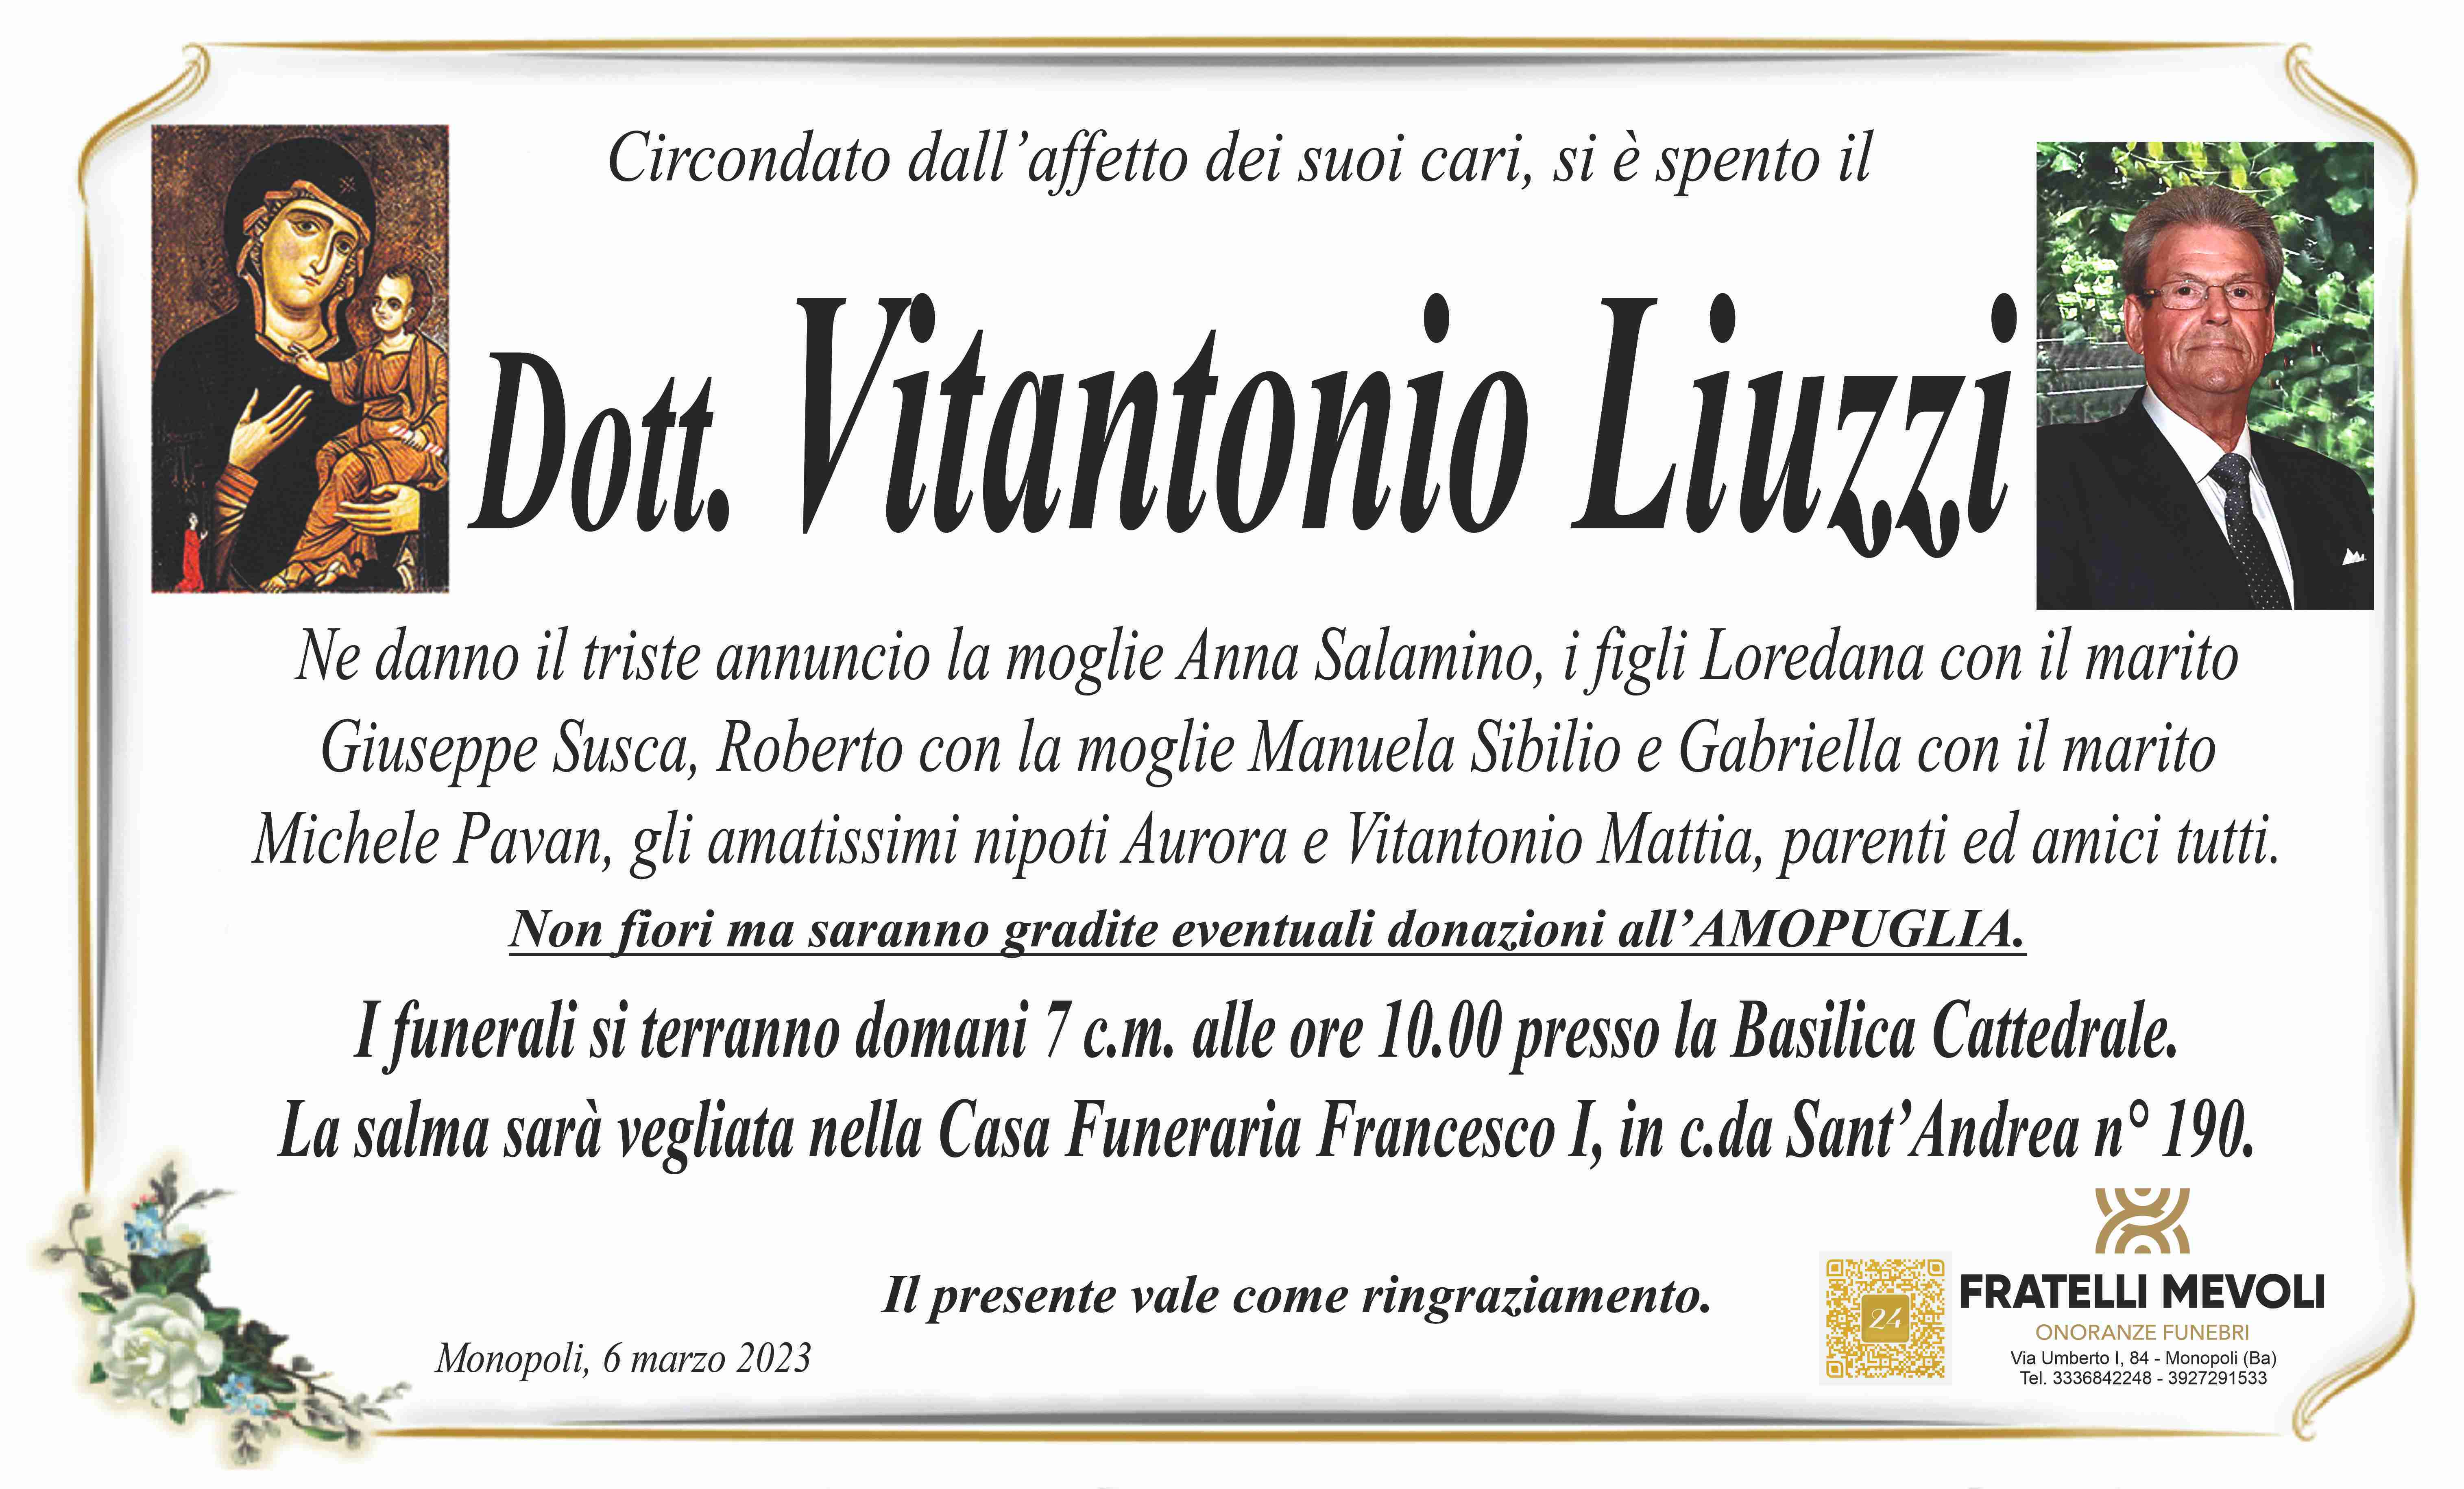 Vitantonio Liuzzi